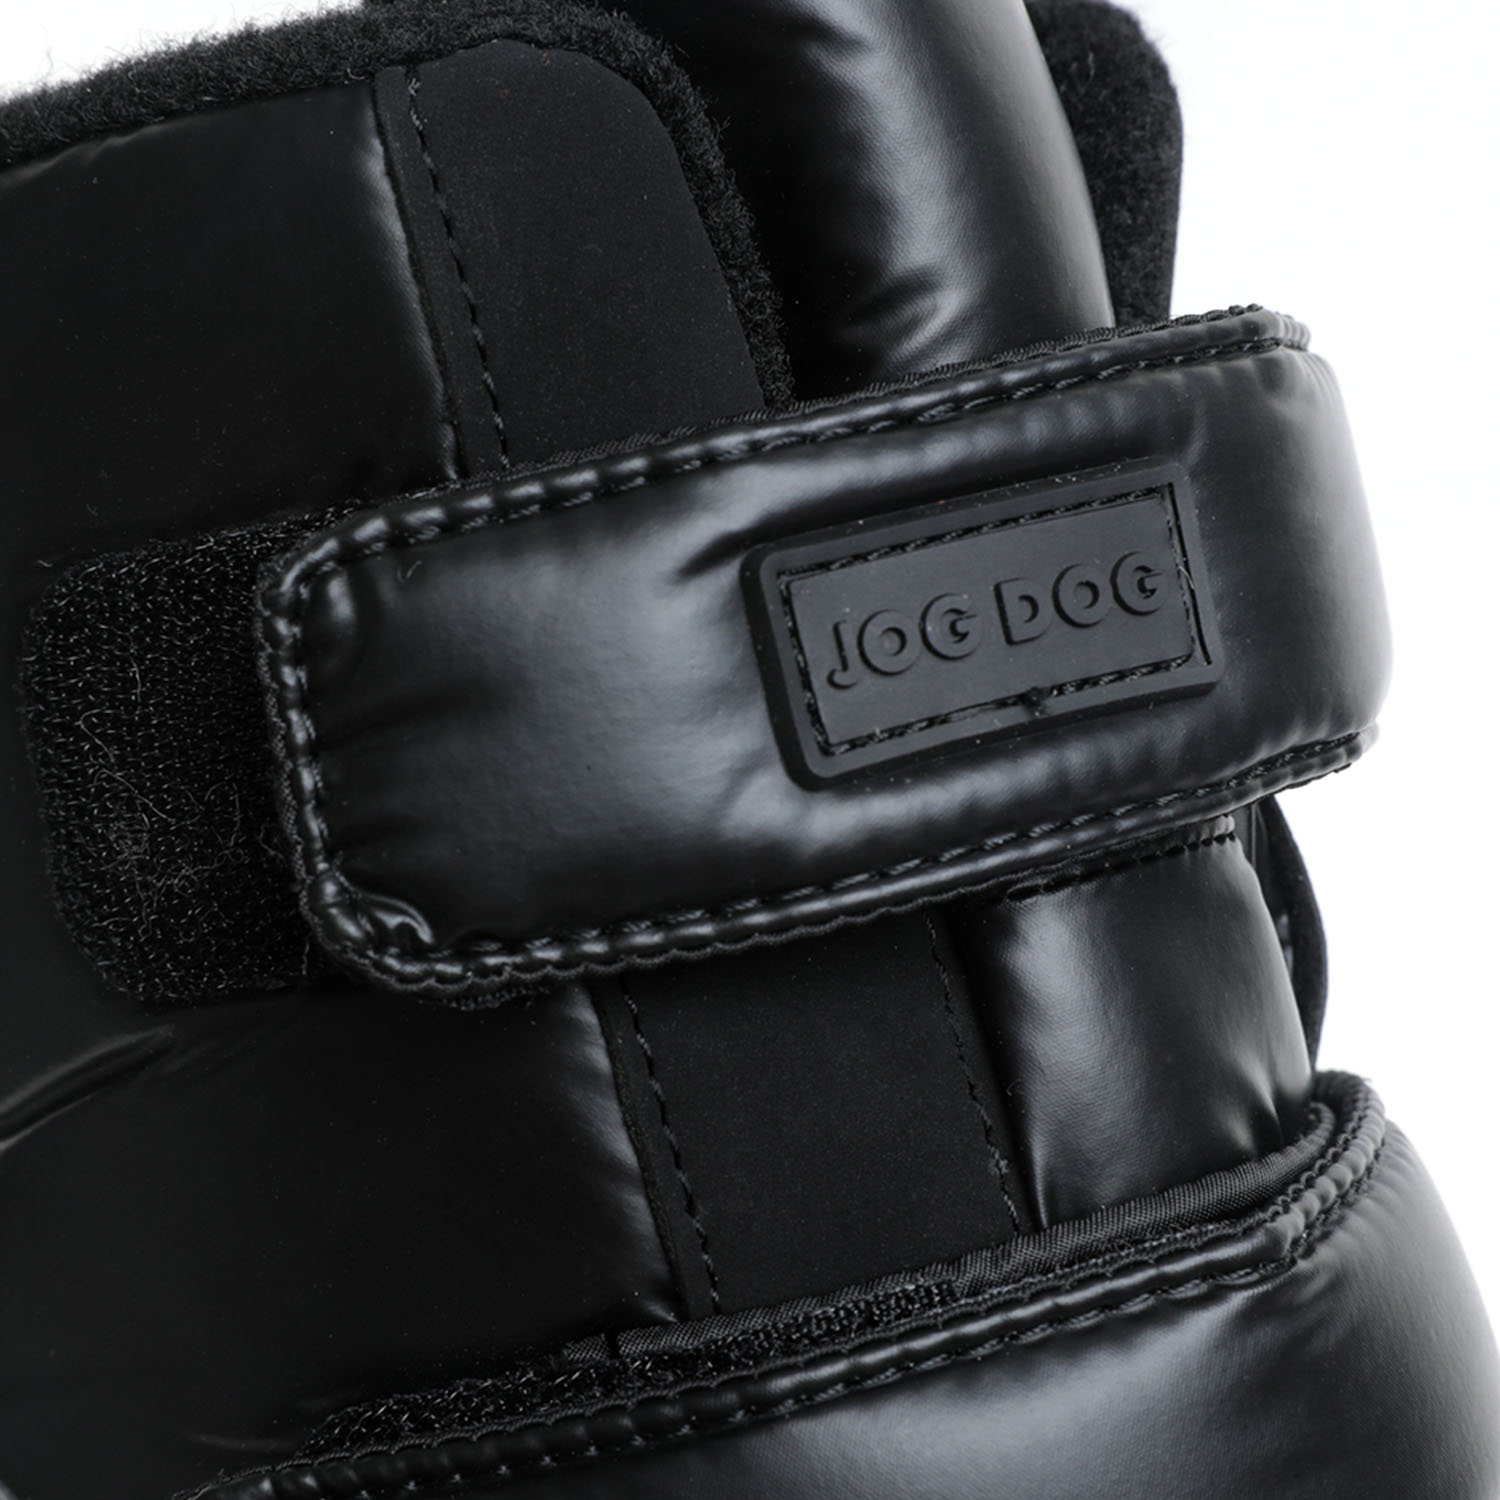 Ботинки детские Jog dog Pathfinder Black